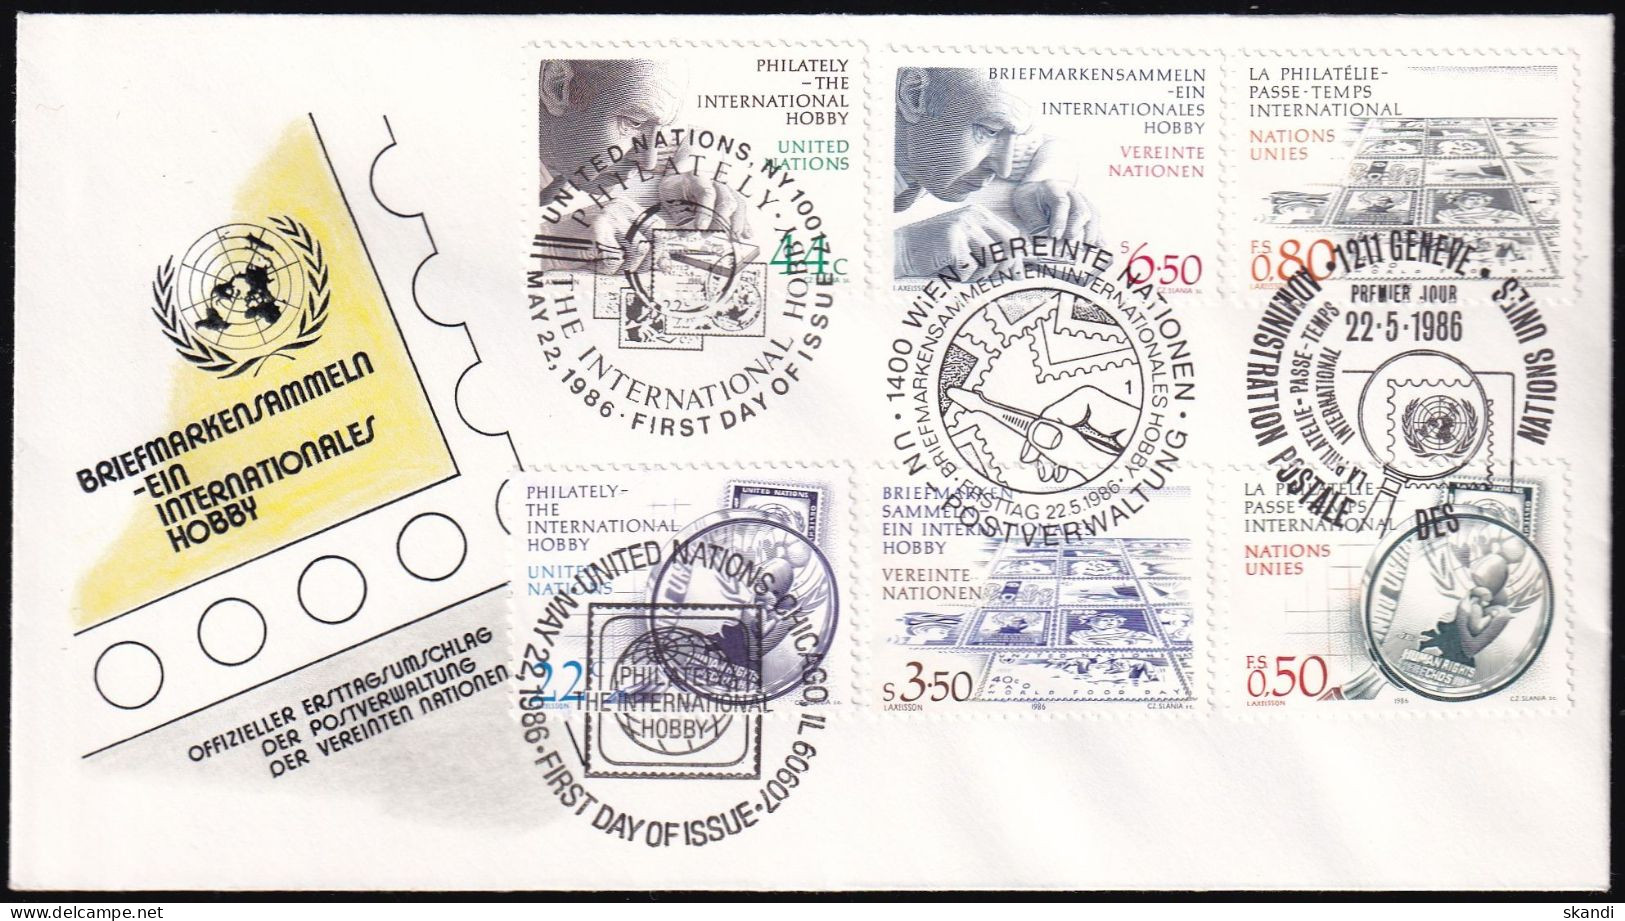 UNO NEW YORK - WIEN - GENF 1986 TRIO-FDC Briefmarkensammeln - Emisiones Comunes New York/Ginebra/Vienna